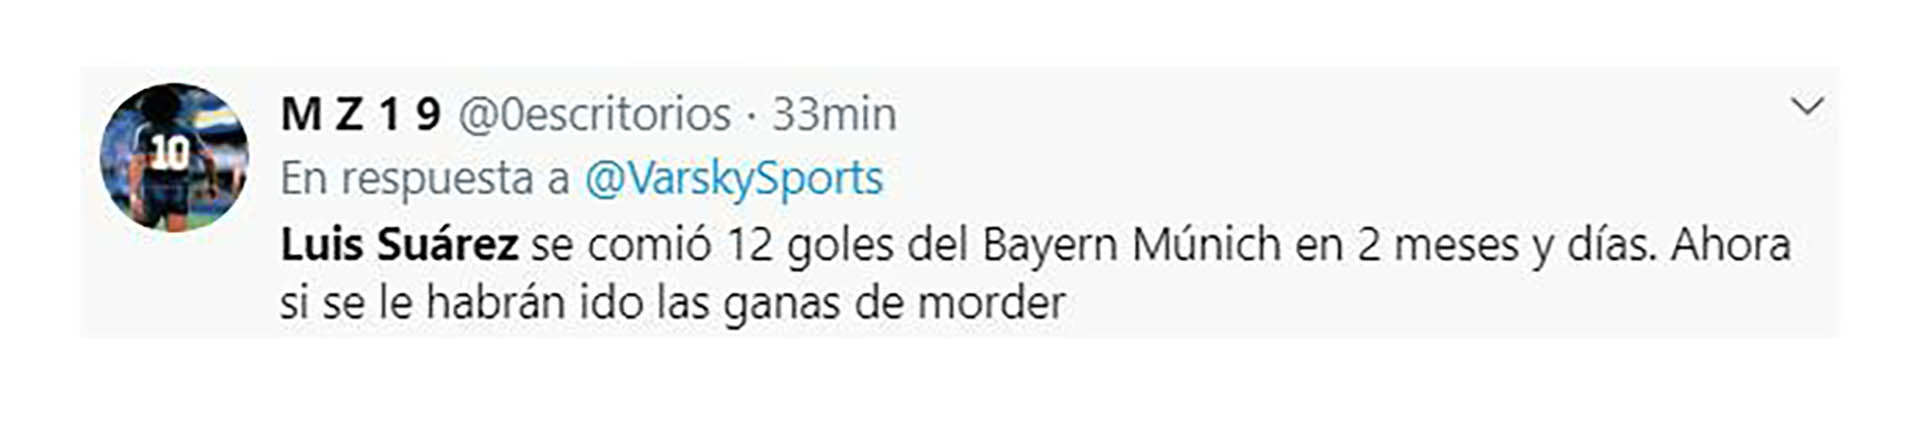 Luis Suárez fue el centro de las burlas tras una nueva derrota ante el Bayern de Múnich en la Champions League